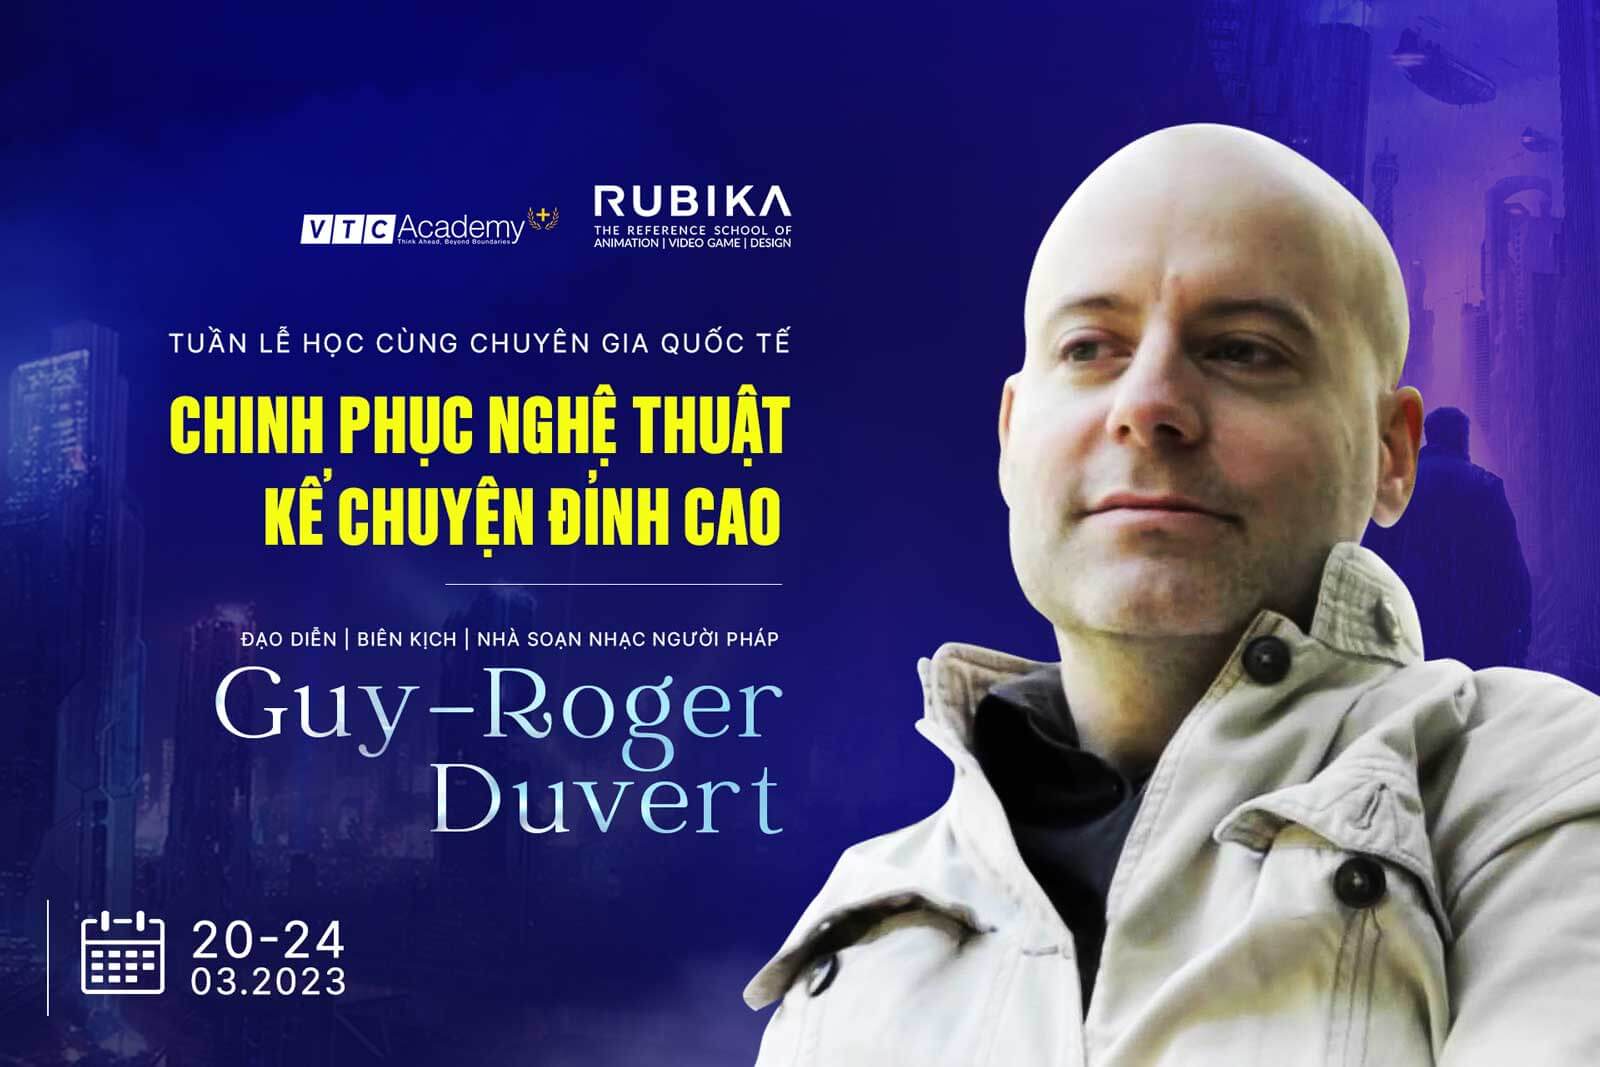 Tuần lễ học cùng chuyên gia quốc tế: Chinh phục nghệ thuật kể chuyện đỉnh cao cùng đạo diễn người Pháp – Guy-Roger Duvert